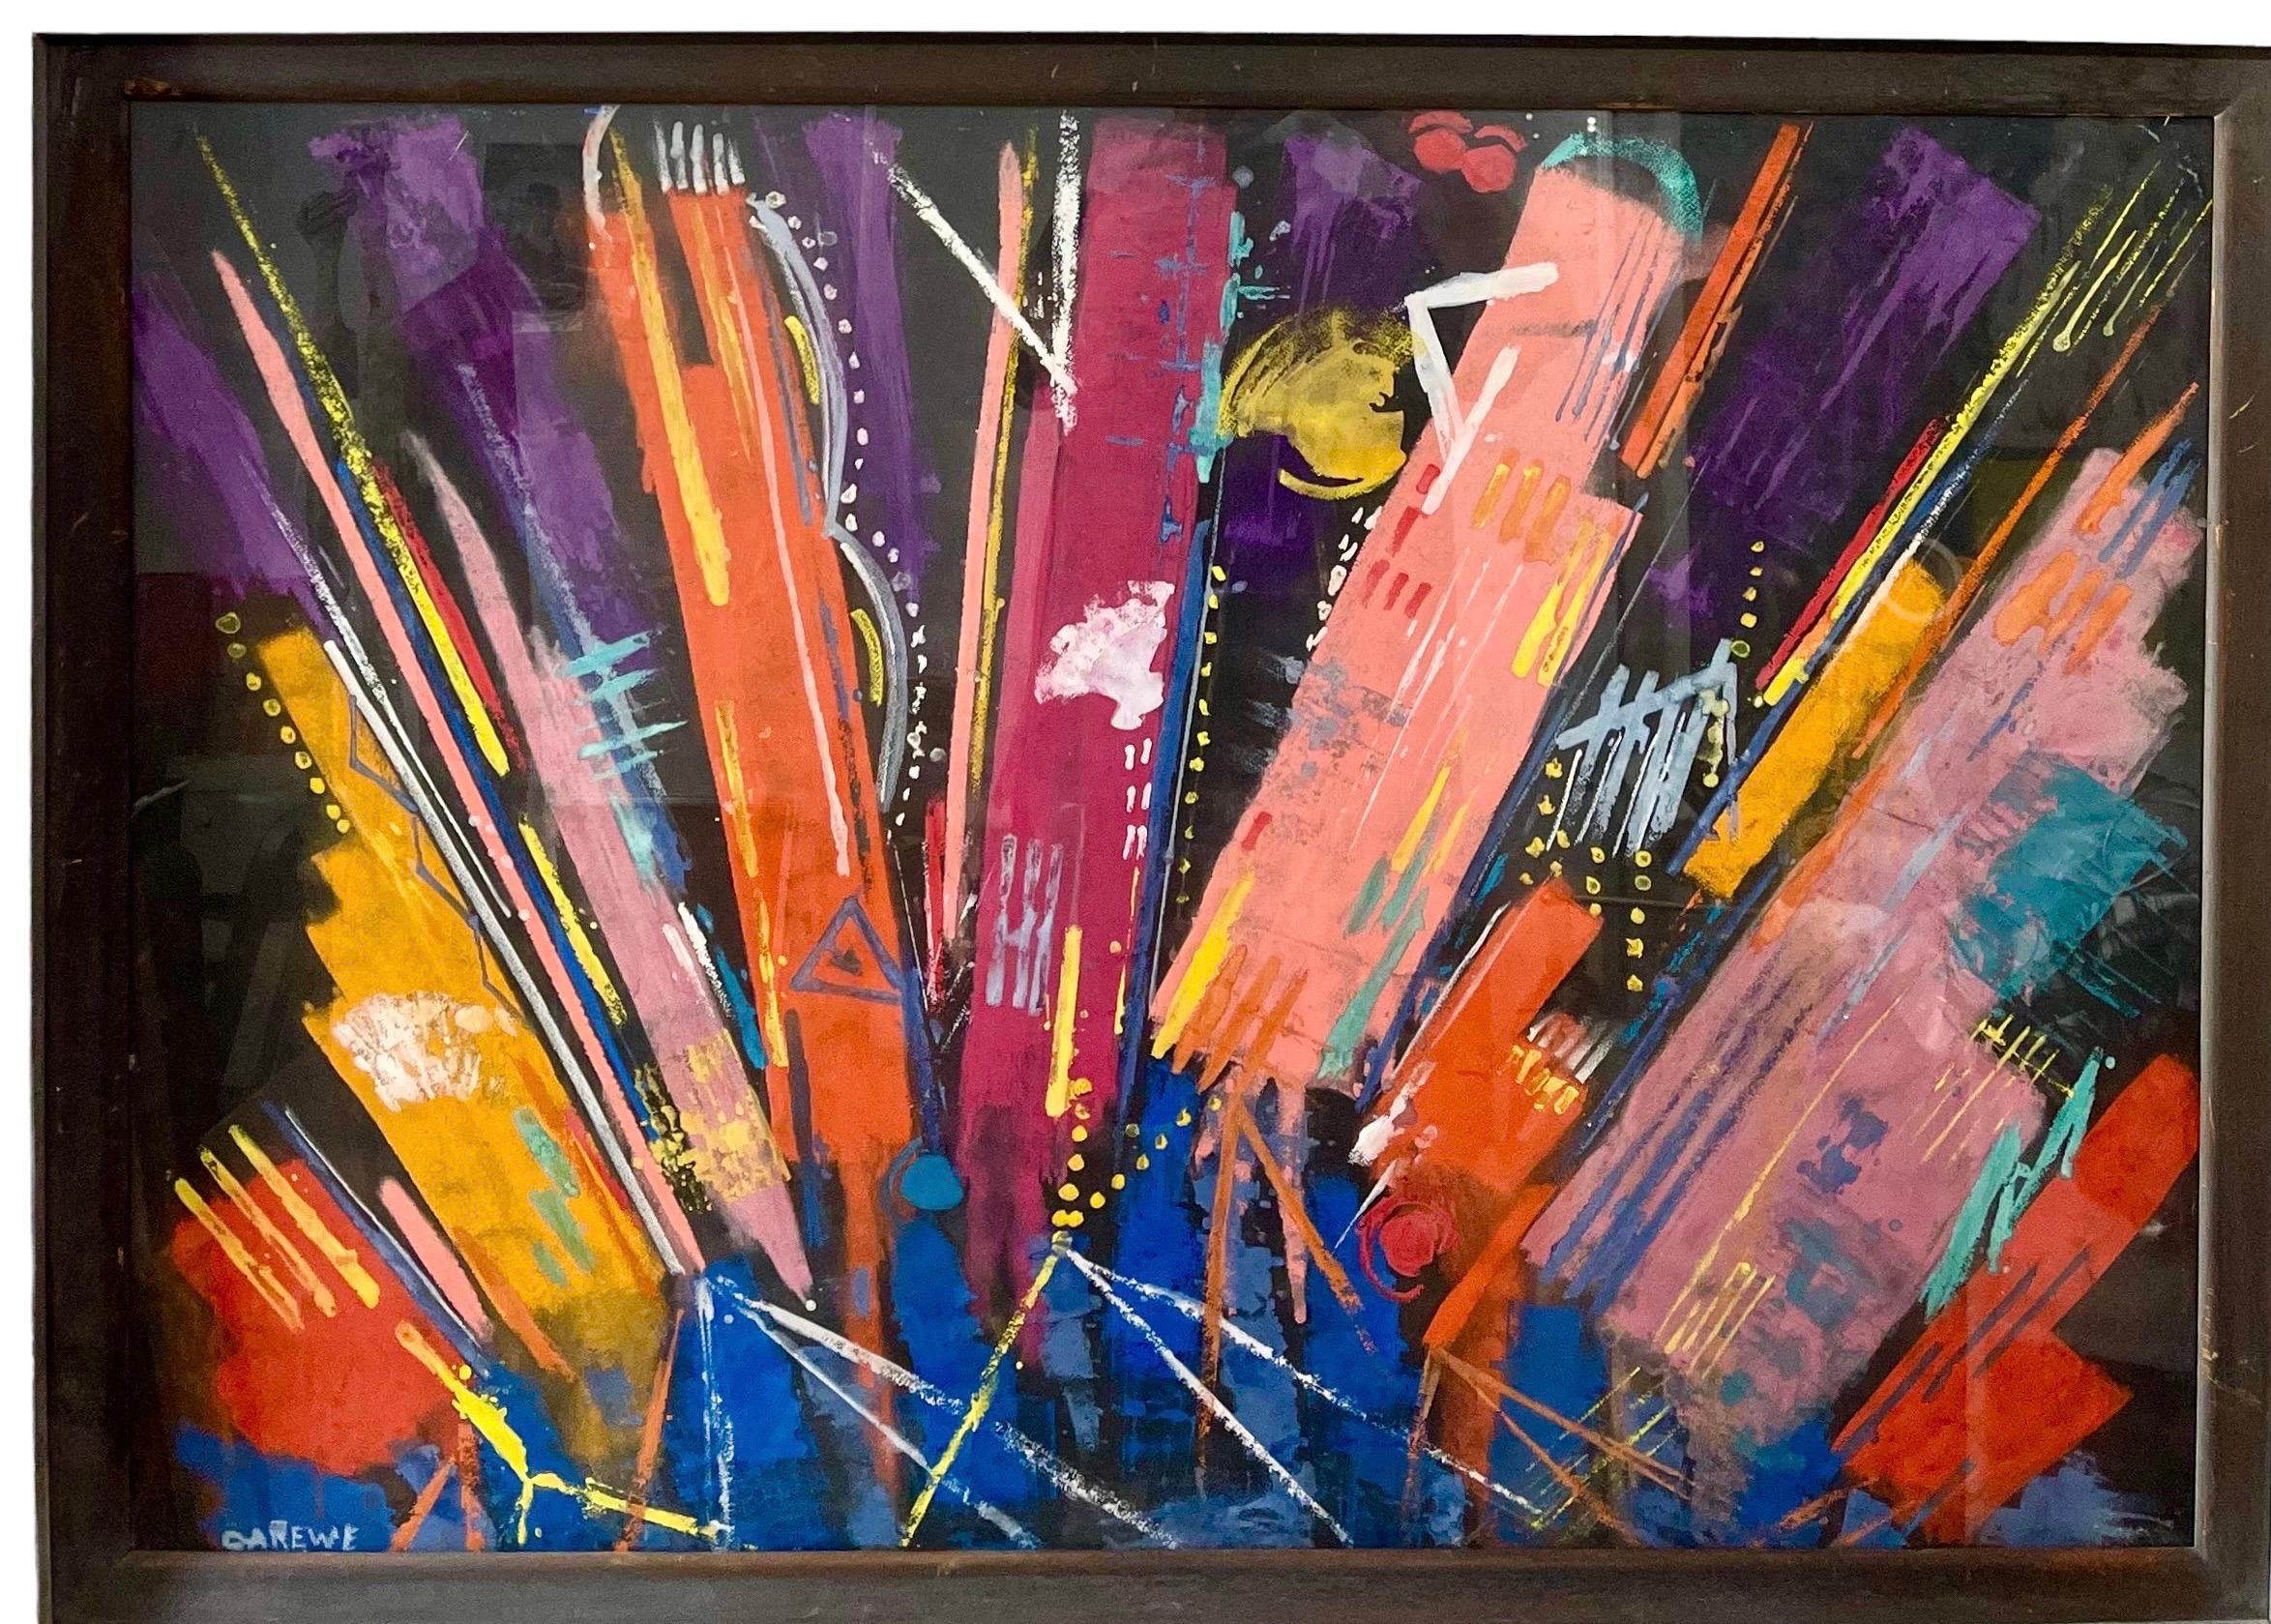 Großes farbenfrohes pastellfarbenes modernistisches abstraktes expressionistisches Gemälde Sylvia Carewe 